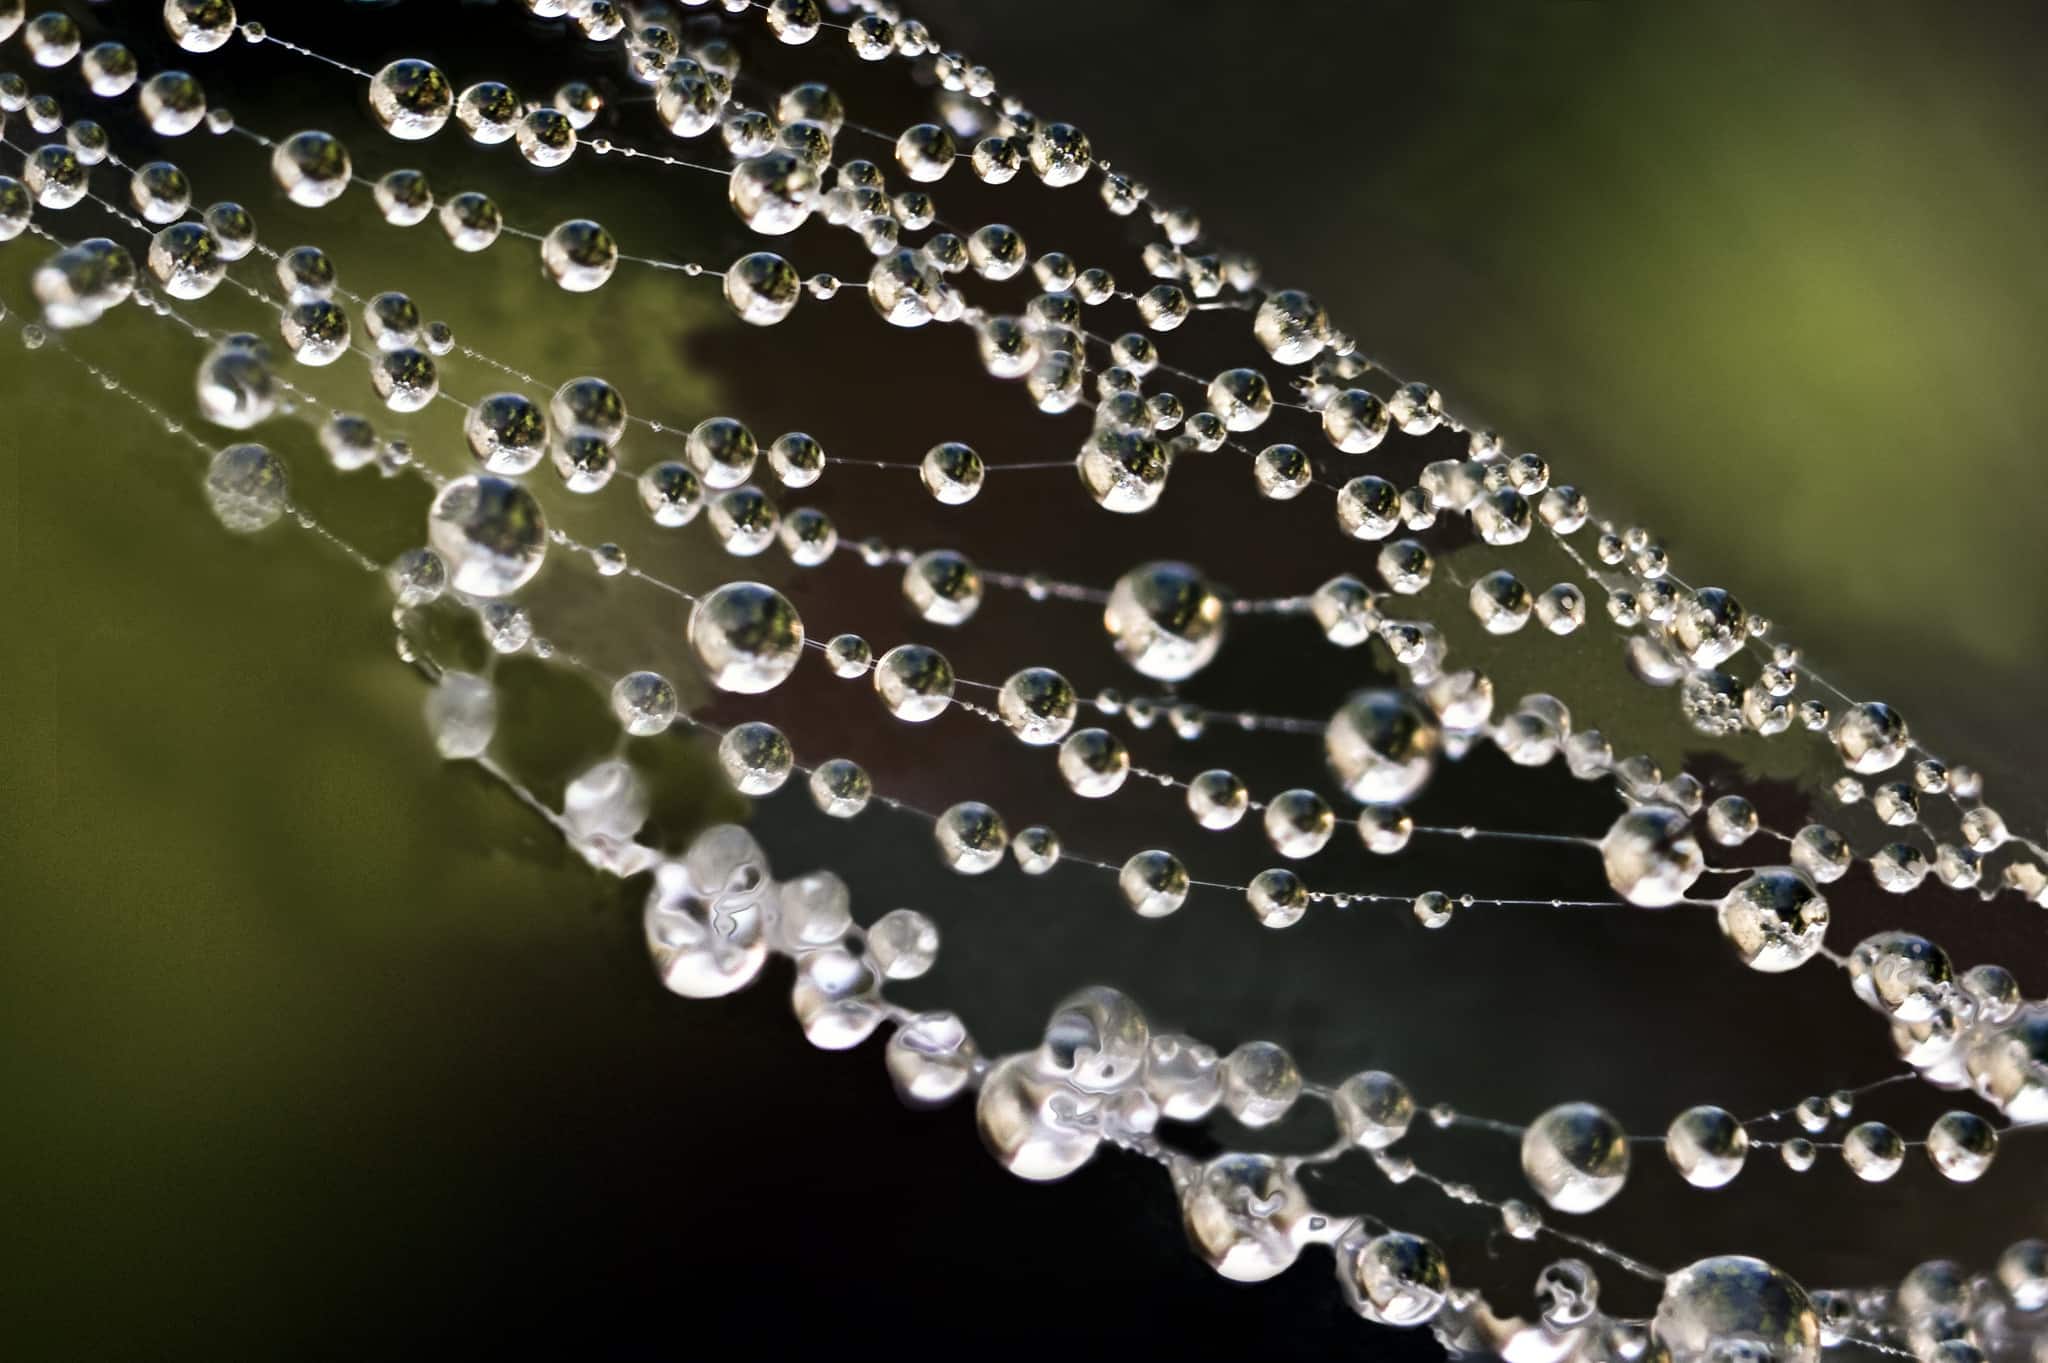 dew spider web